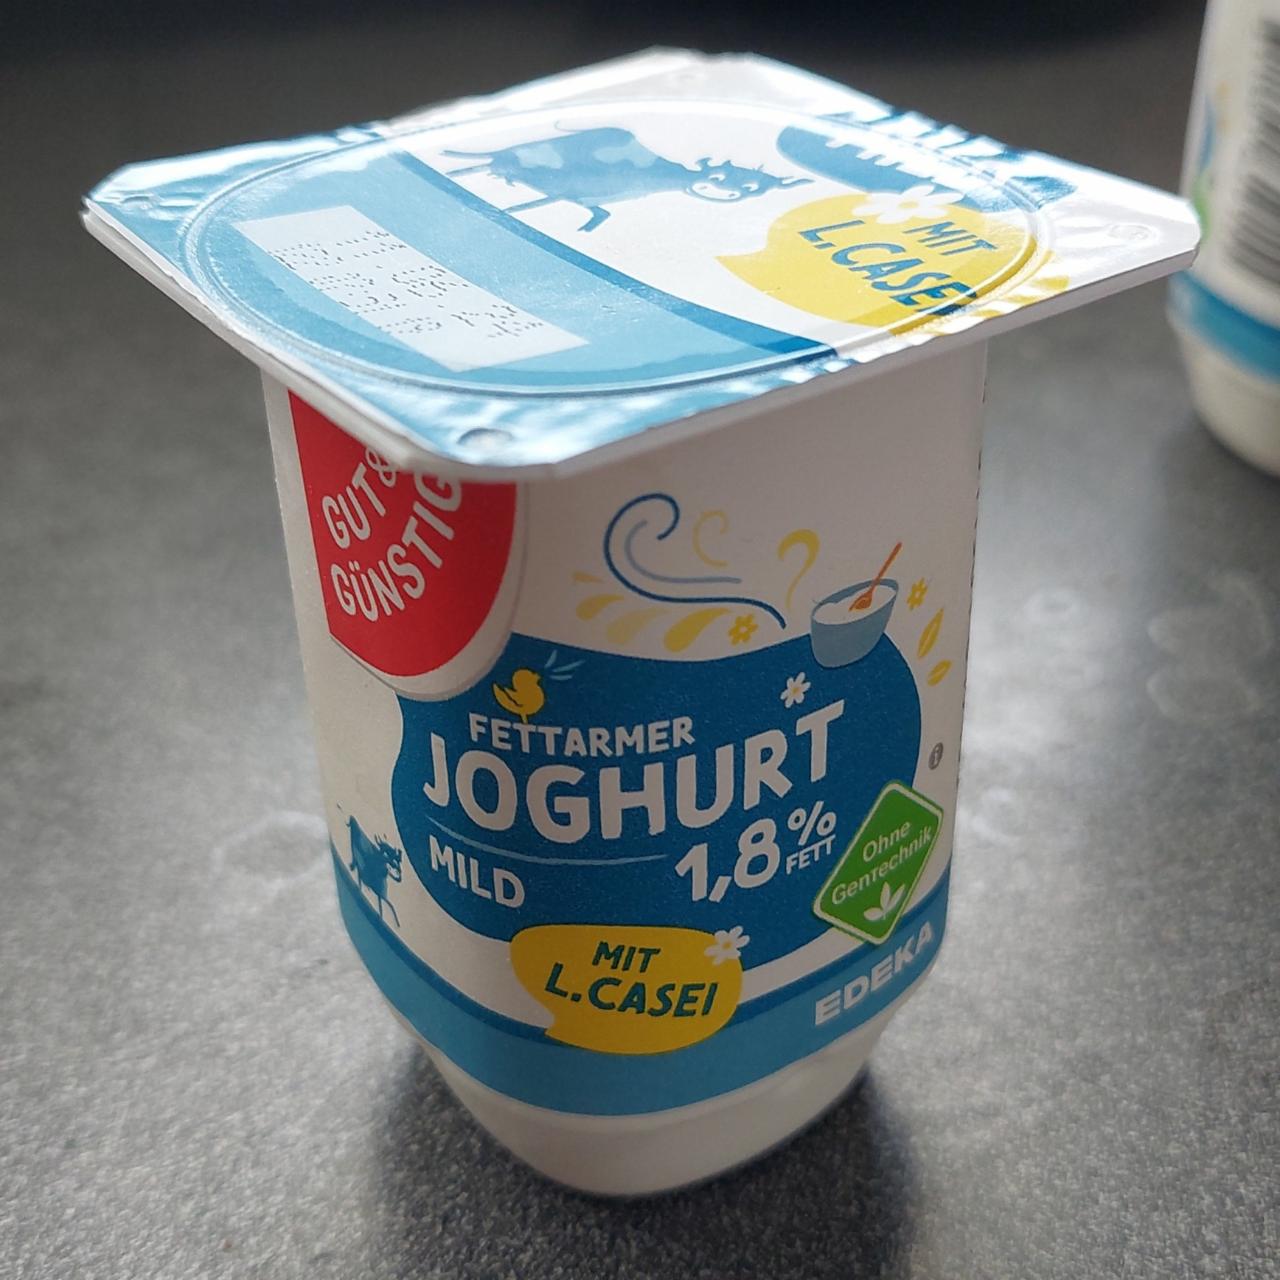 Fotografie - Fettarmer joghurt mild 1,8% fett Gut&Günstig